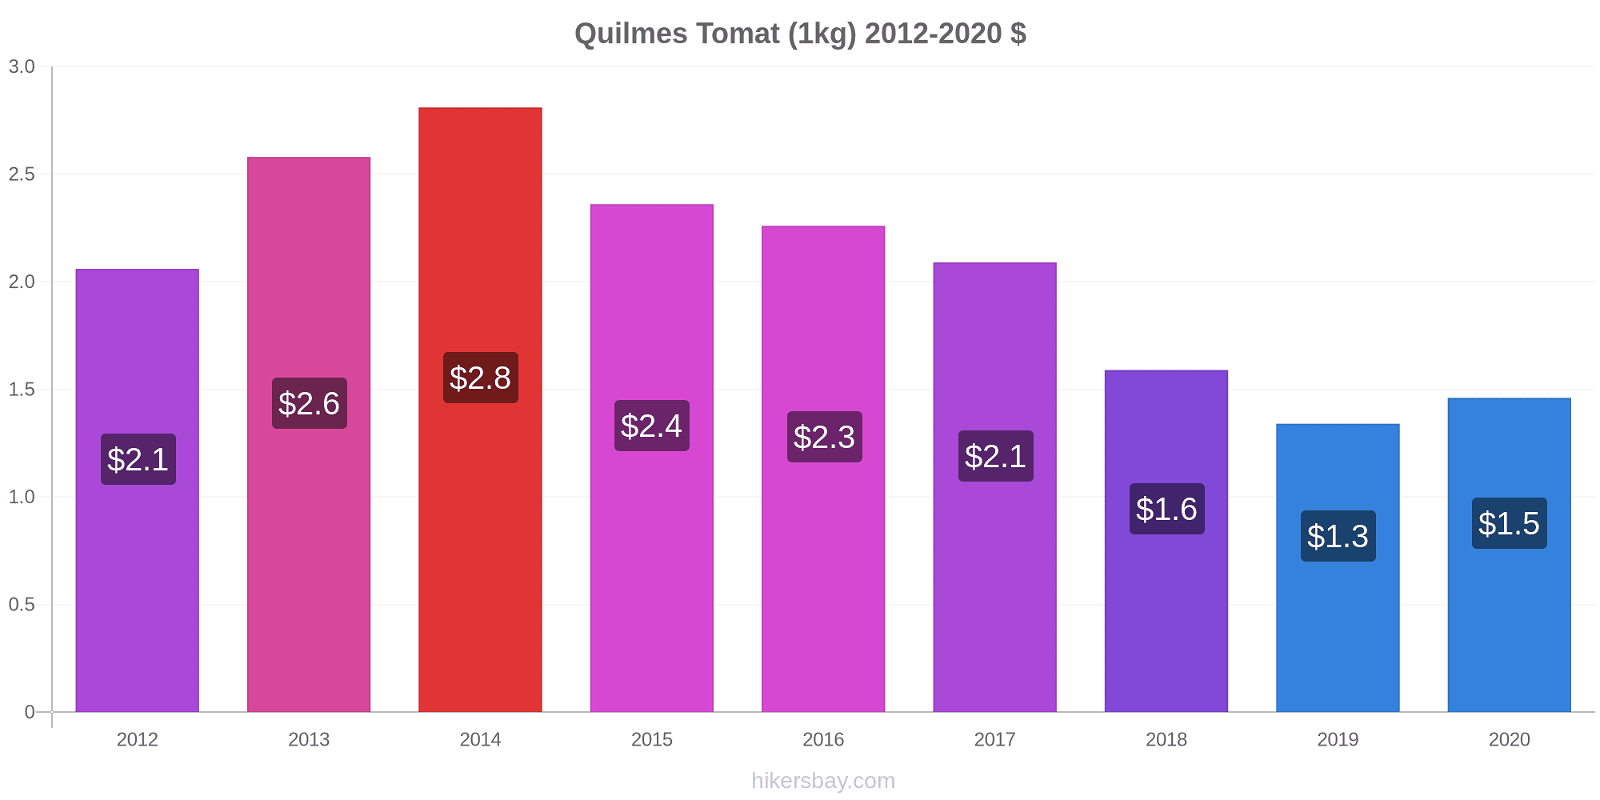 Quilmes prisændringer Tomat (1kg) hikersbay.com